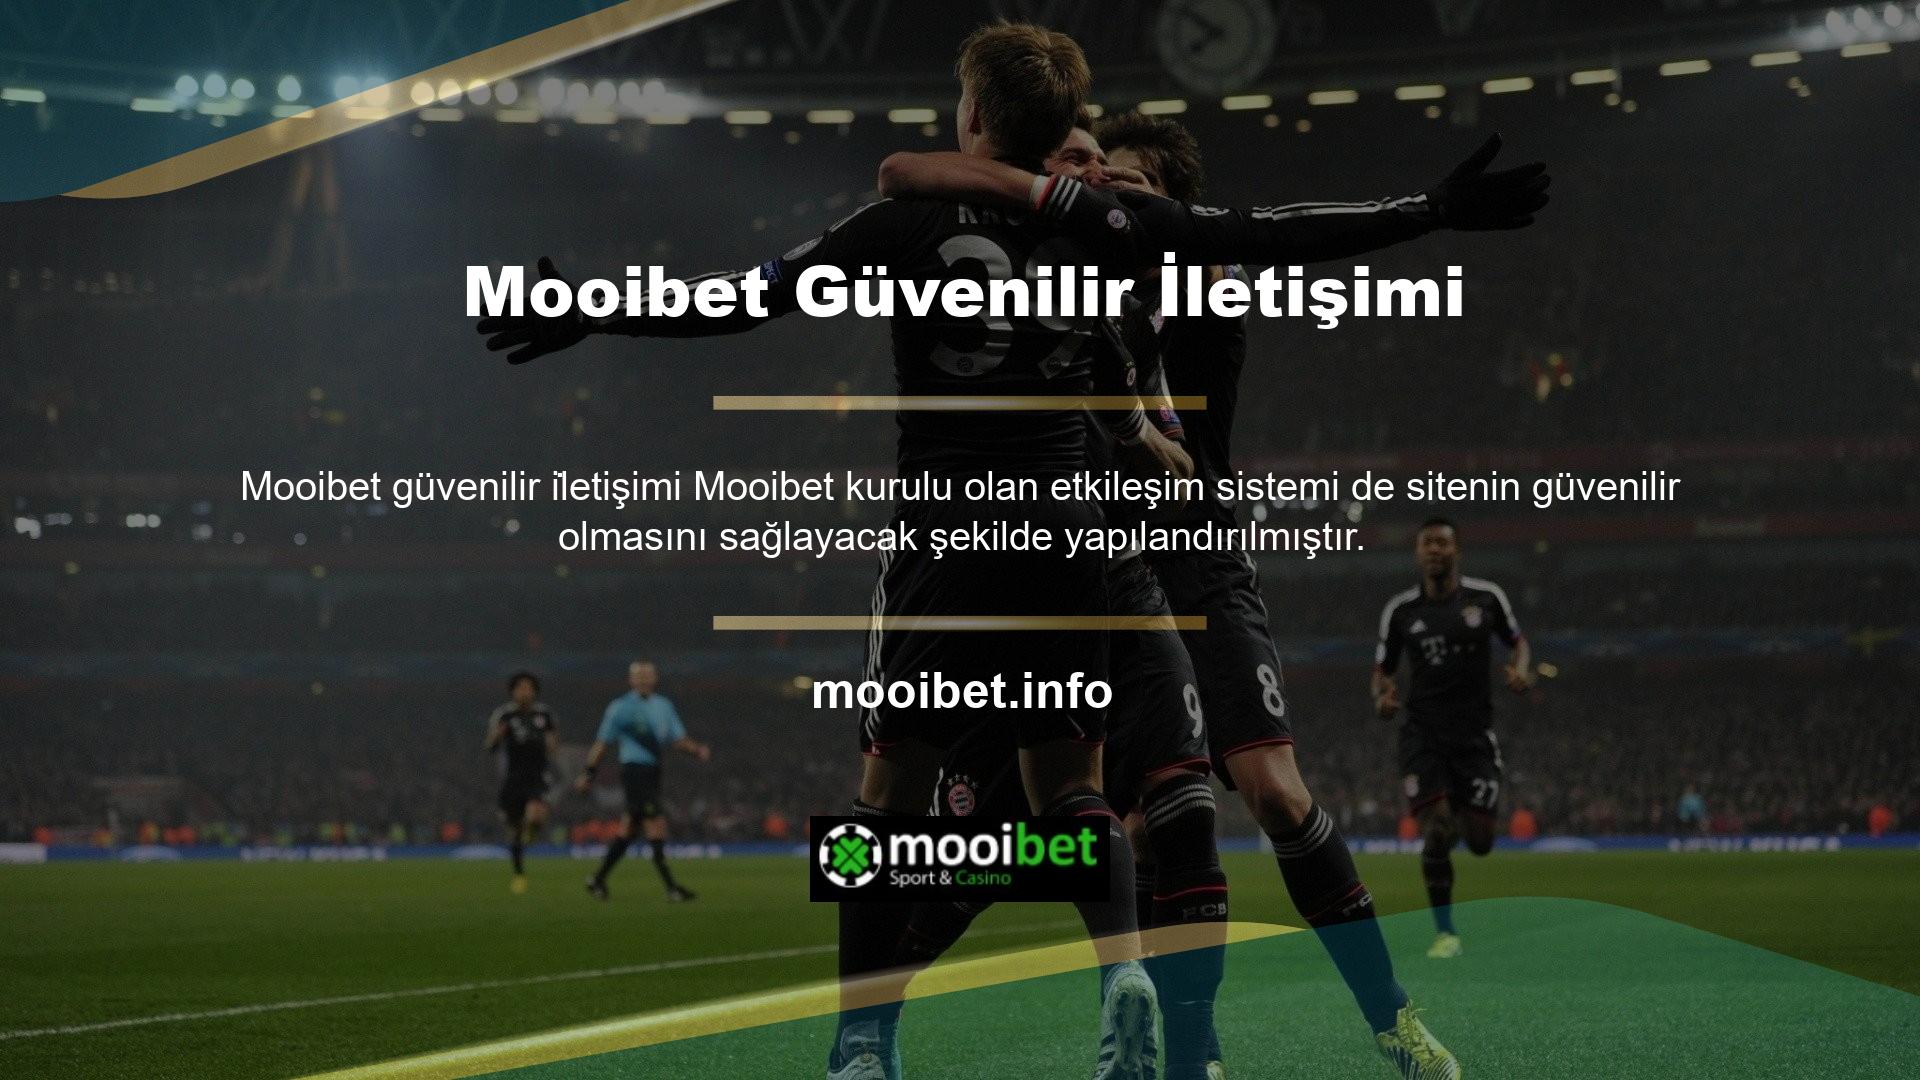 Mooibet, web sitesinde yaşayabileceğiniz her türlü sorunu müşteri hizmetleri departmanımız aracılığıyla çözebilir